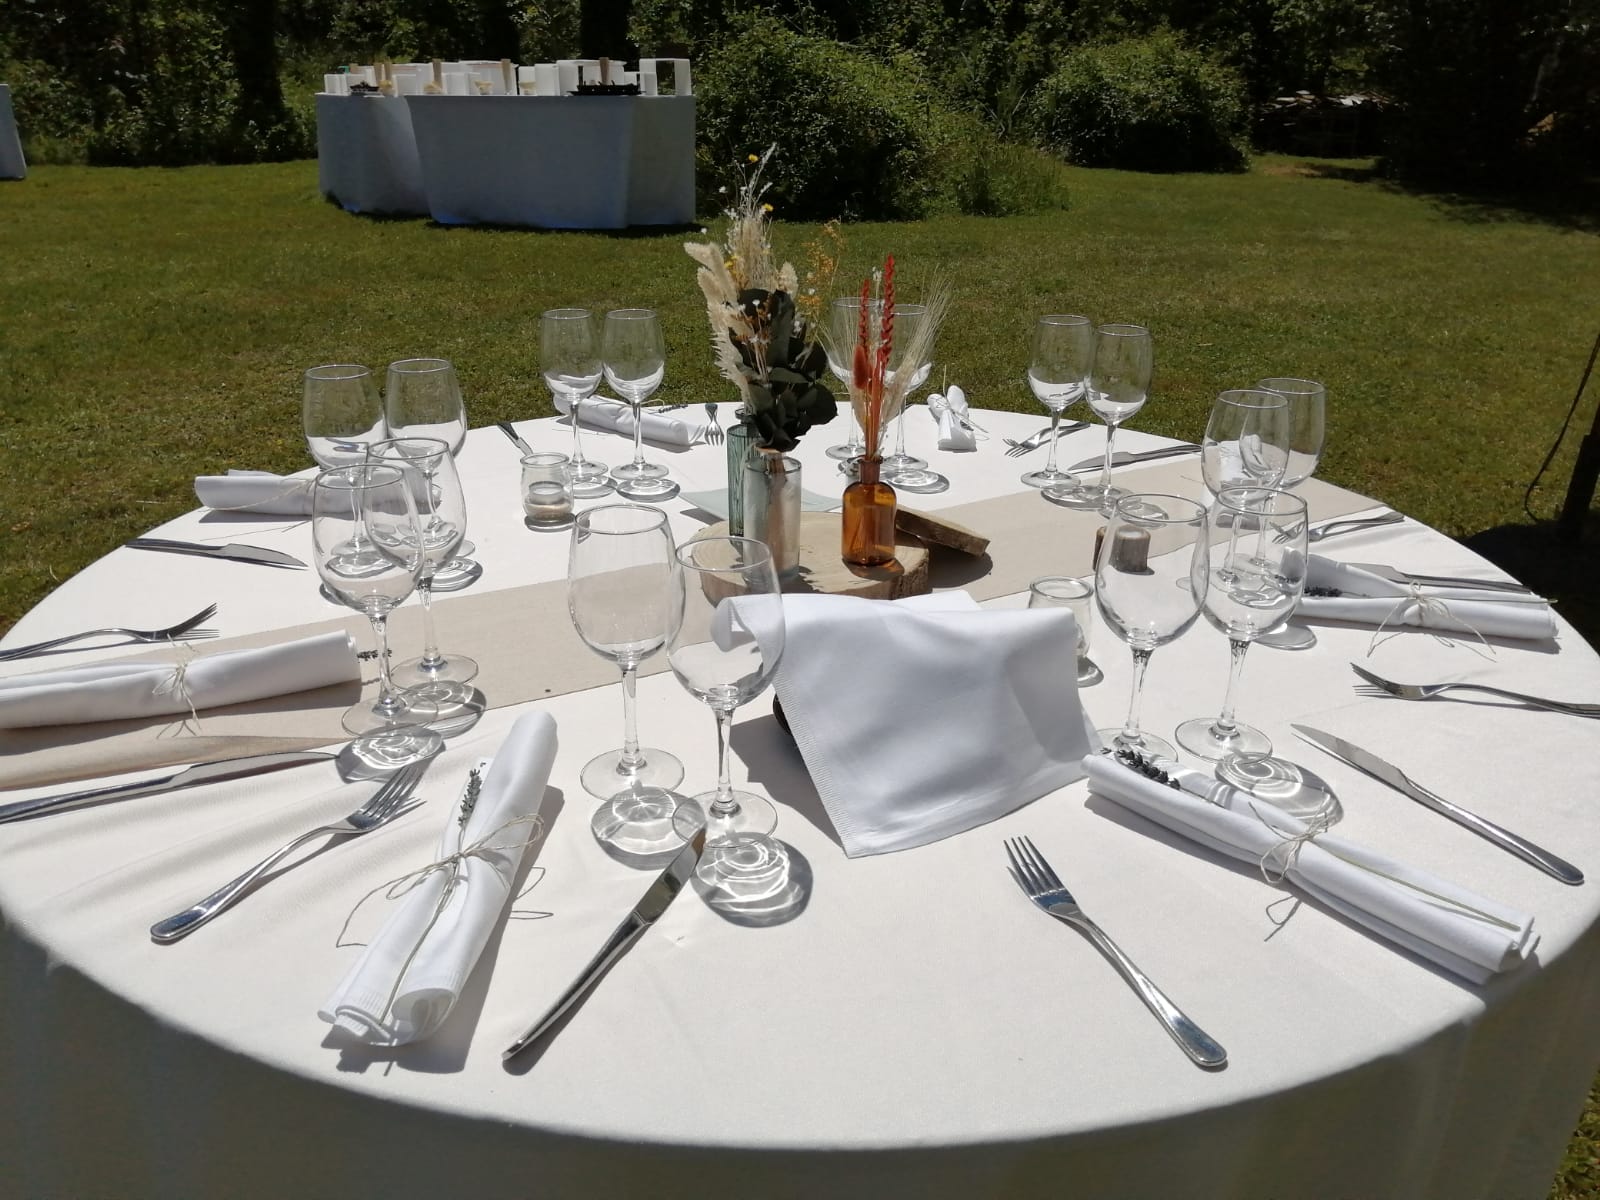 Décoration de table - Mariage - C&D Events, wedding planner / organisatrice de mariage dans l'Oise